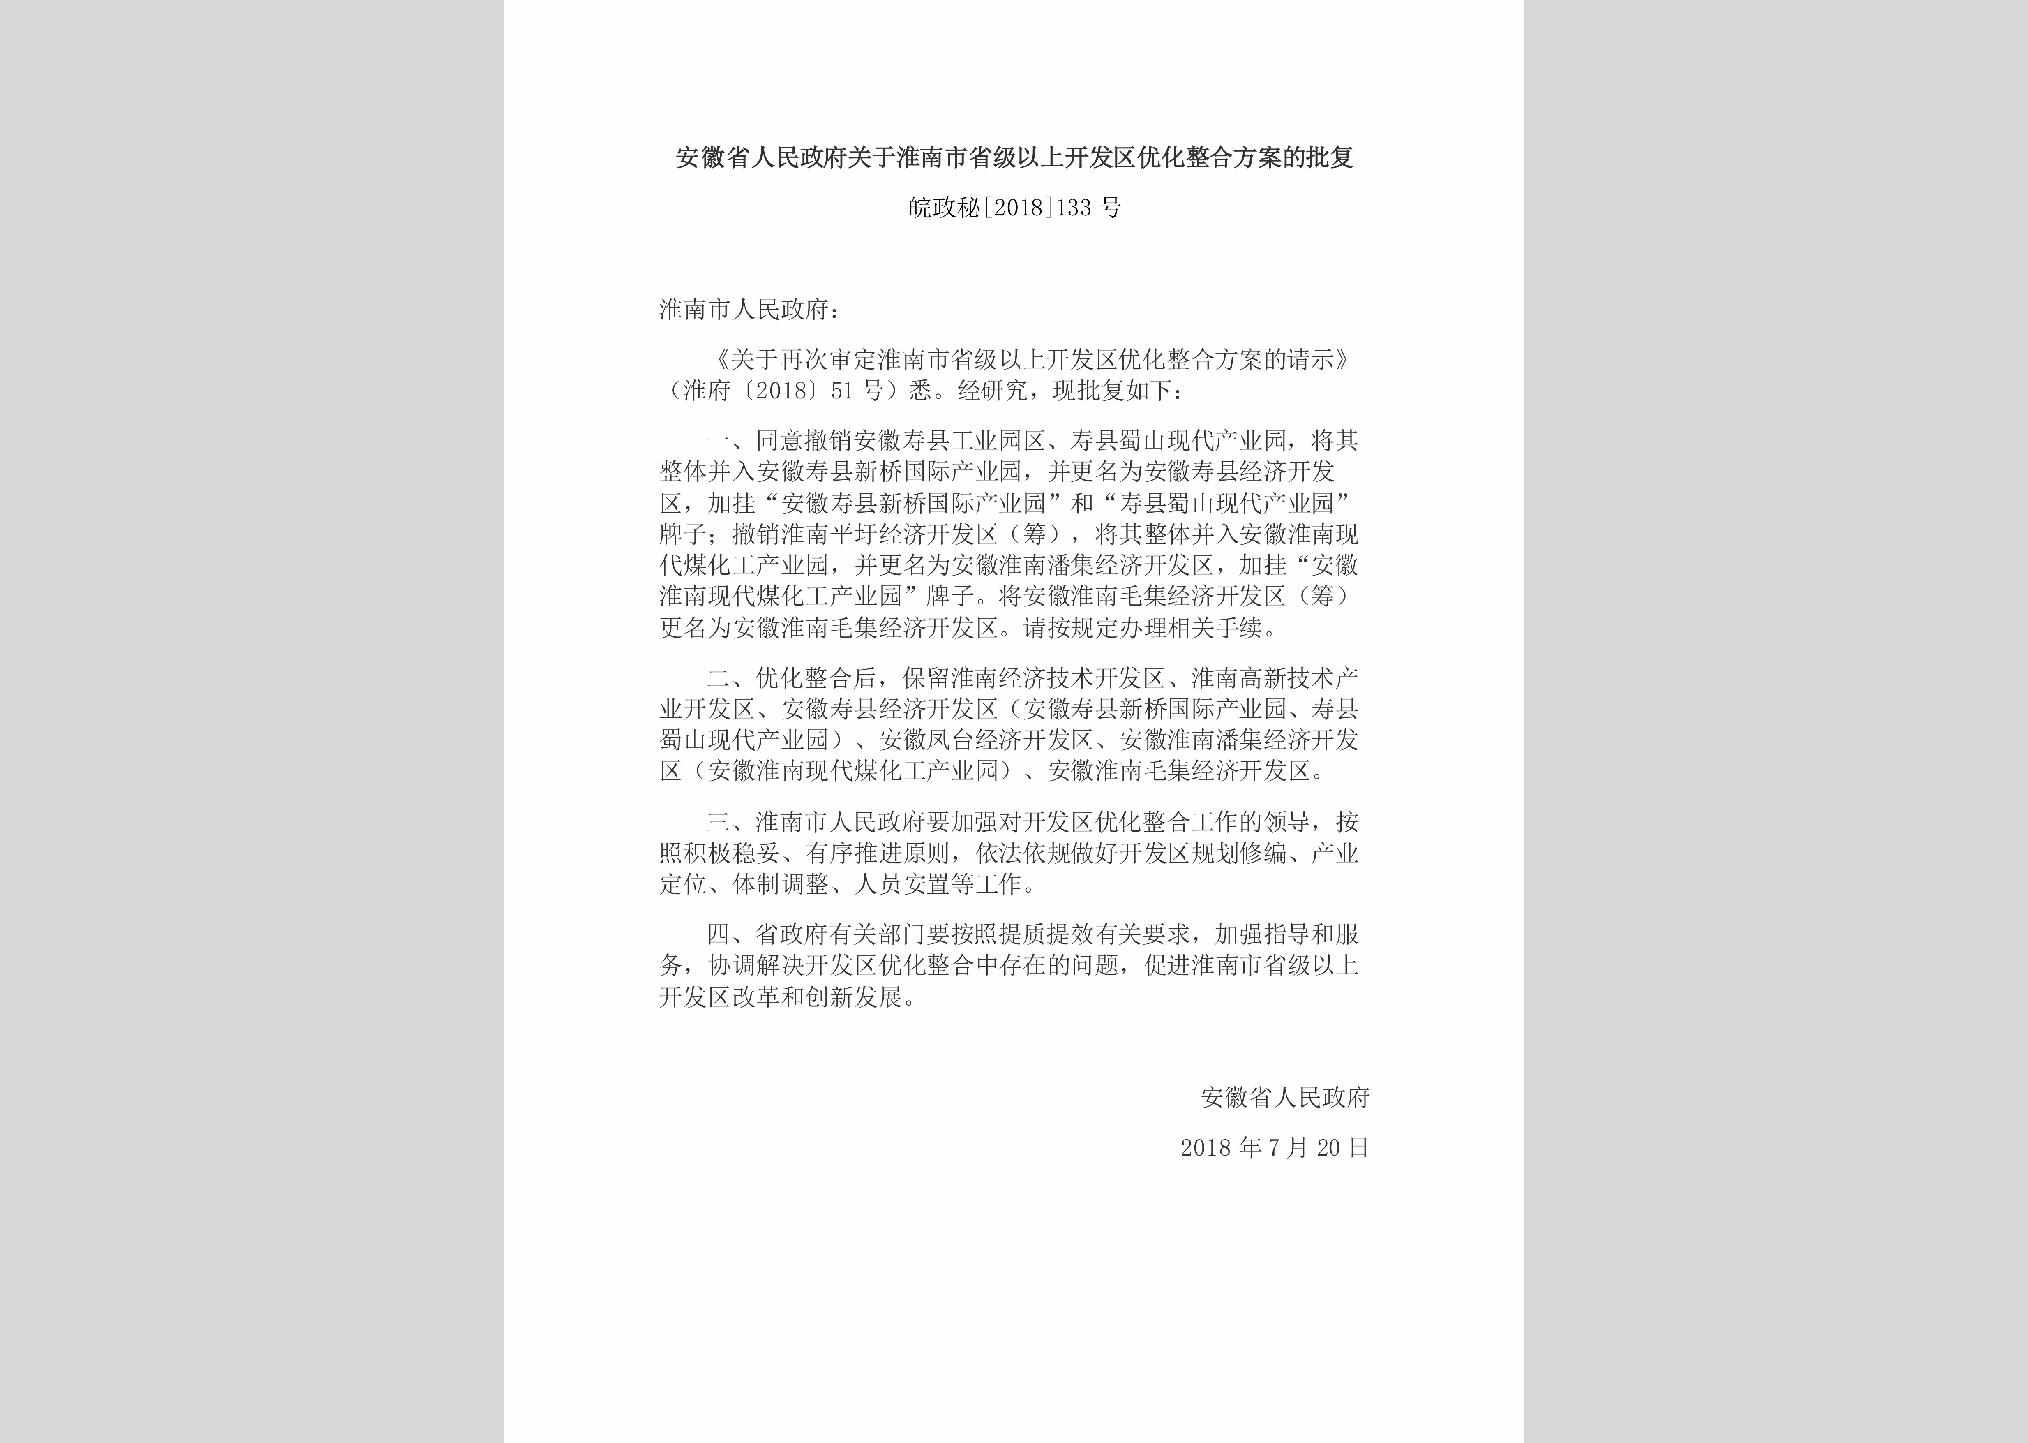 皖政秘[2018]133号：安徽省人民政府关于淮南市省级以上开发区优化整合方案的批复